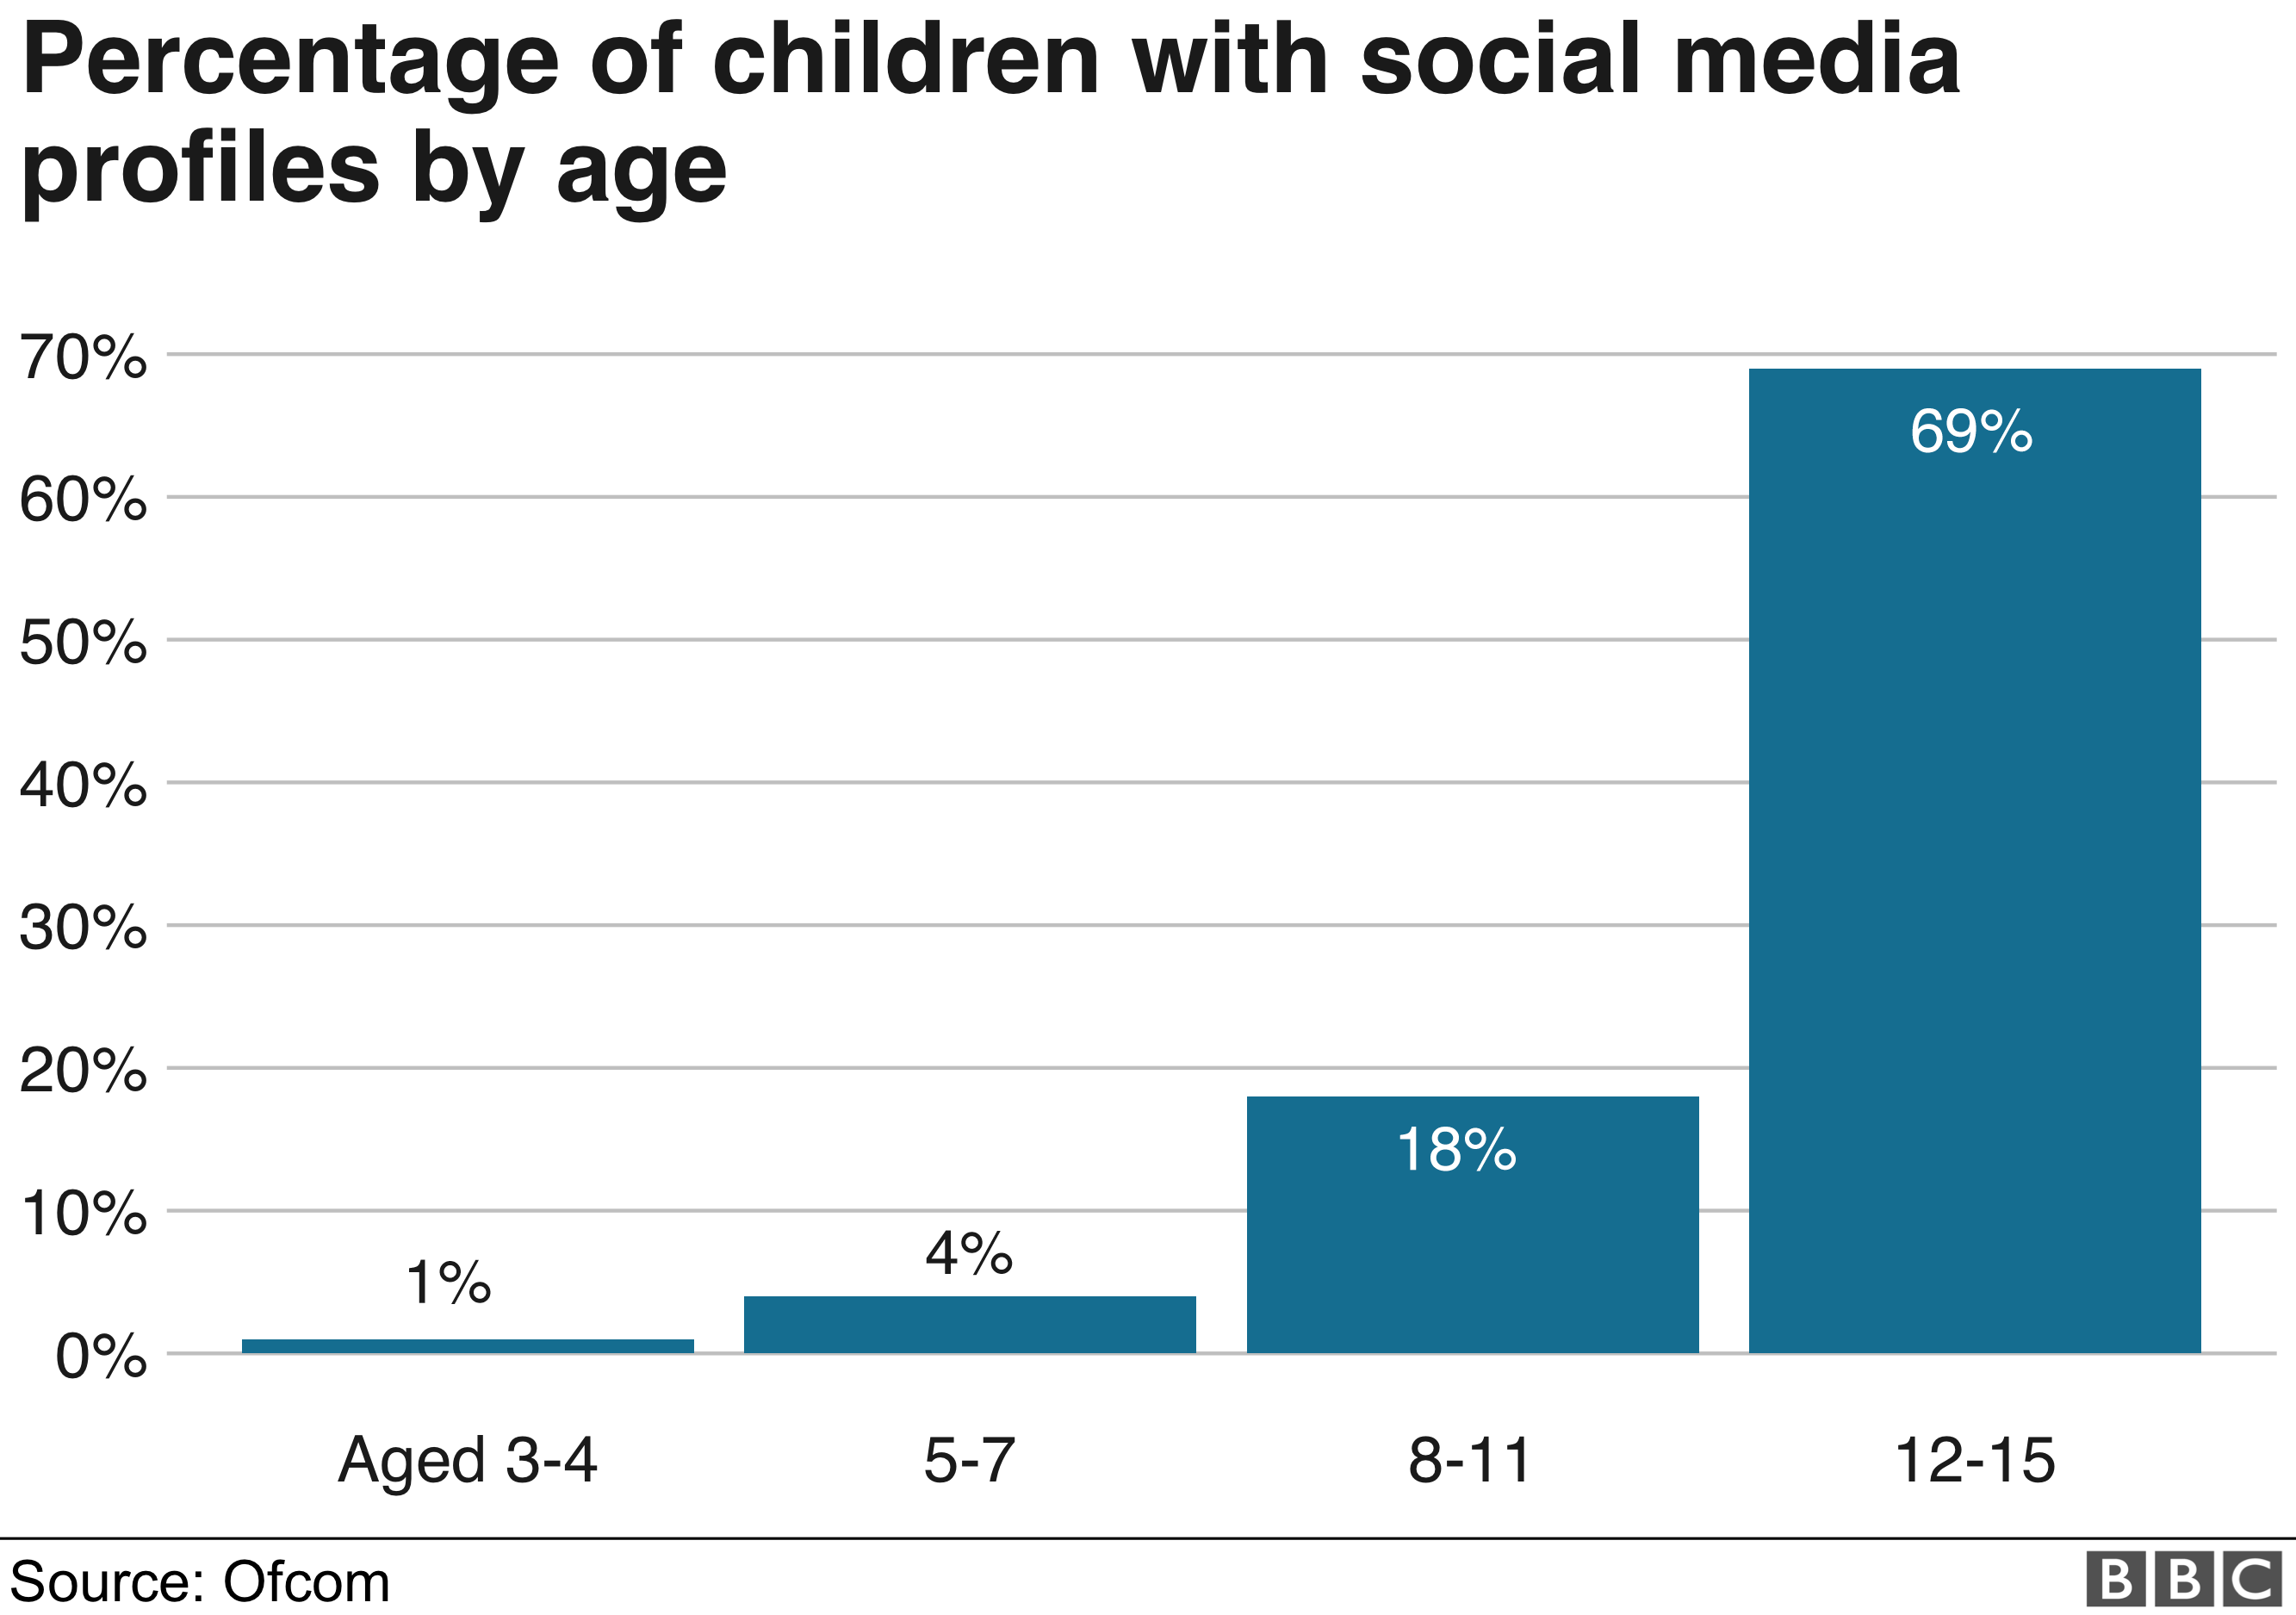 Диаграмма Ofcom, показывающая, что 89% детей в возрасте 12-15 лет имеют учетную запись в социальных сетях